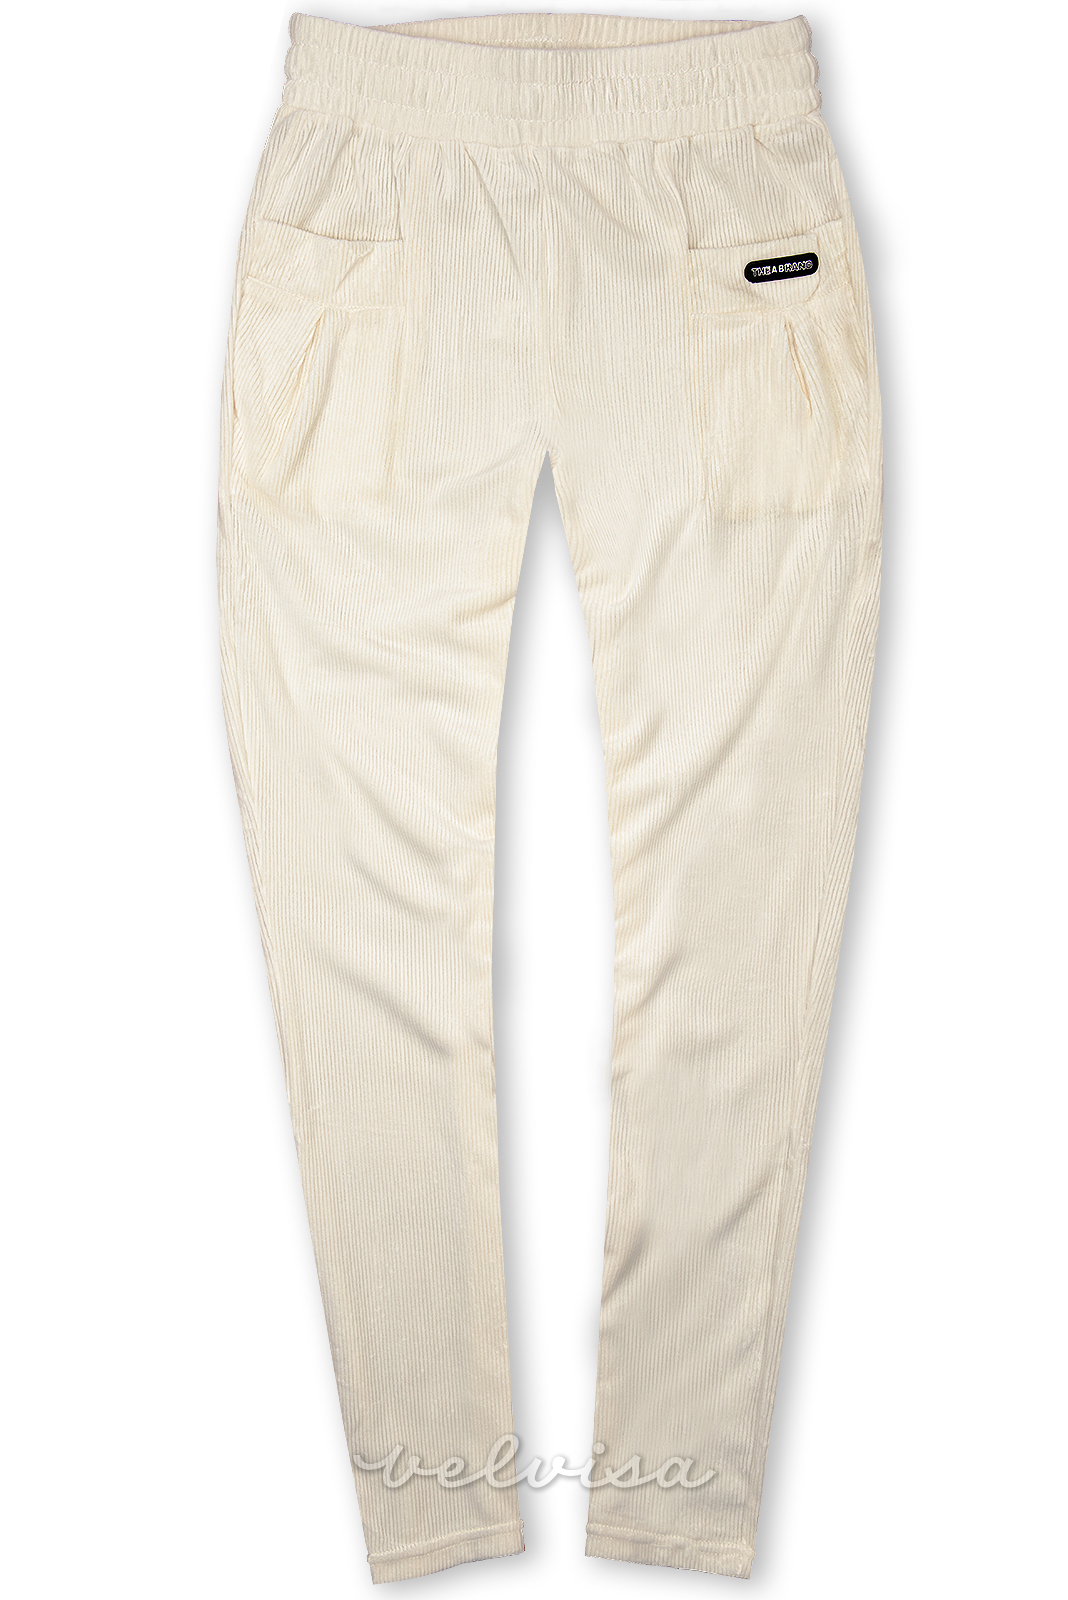 Ecru (boja slonovače) hlače s džepovima THE BRAND